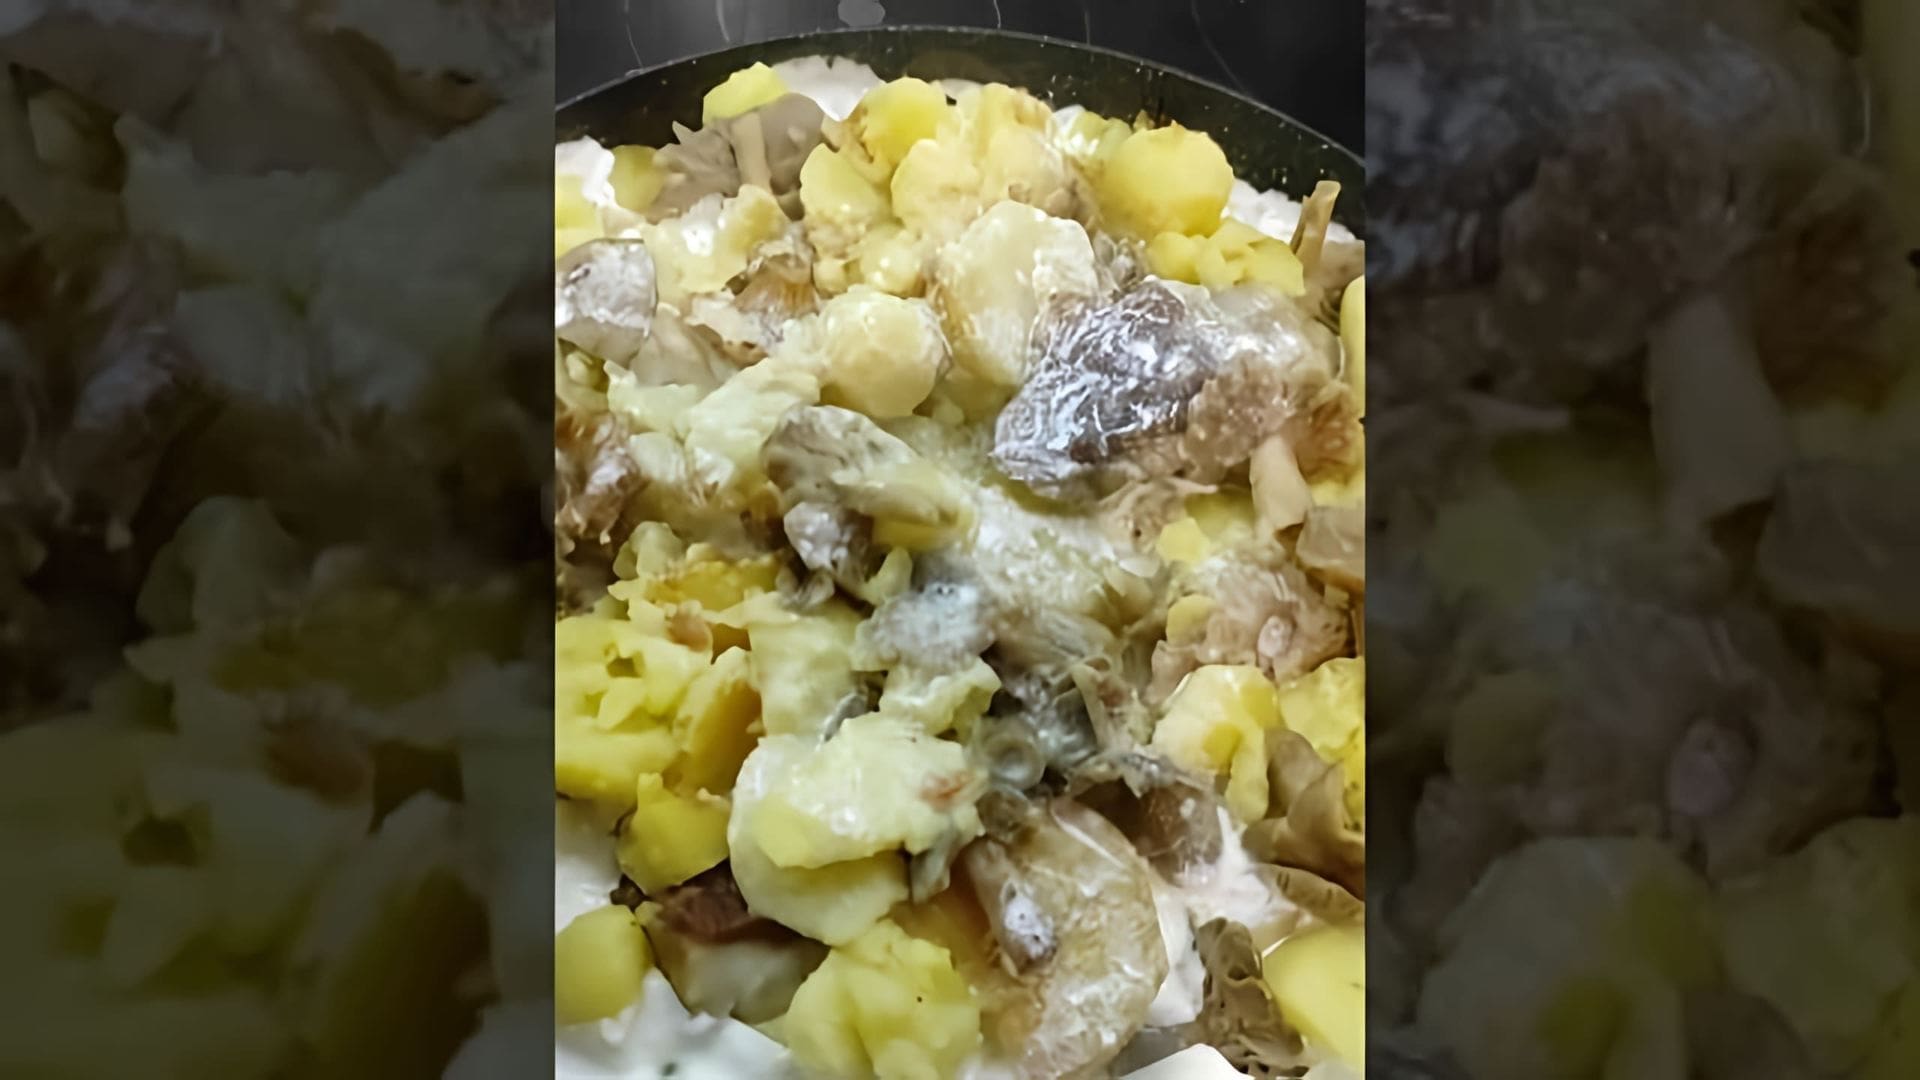 В этом видео-ролике мы увидим процесс приготовления вкусного блюда из грибов - жареных сыроежек, лисичек и белого с картошкой под сливочным соусом